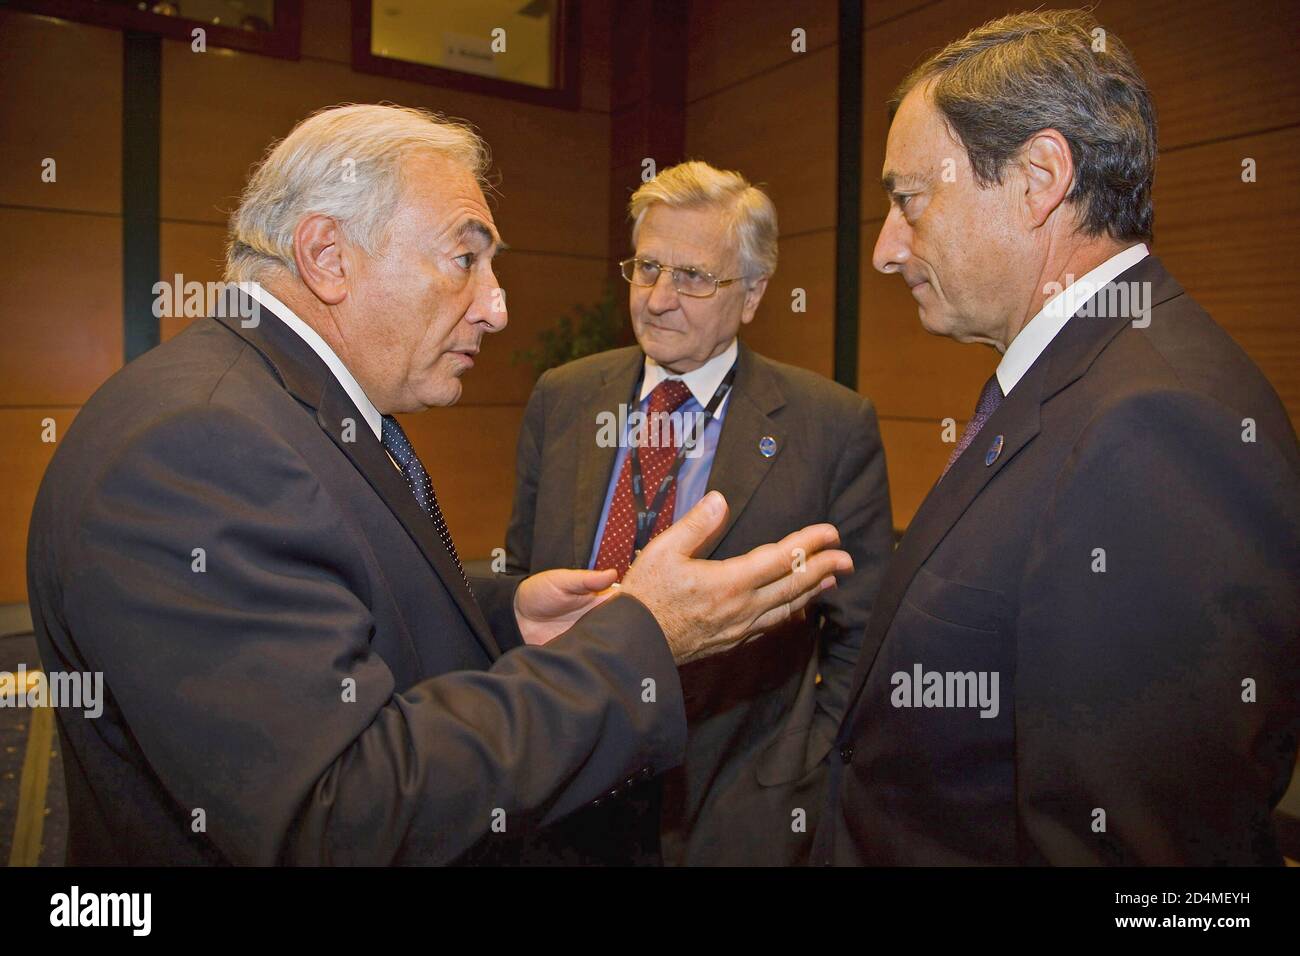 Dominique Strauss-Kahn (L), geschäftsführender Direktor des Internationalen Währungsfonds, spricht mit dem Präsidenten der Europäischen Zentralbank, Jean-Claude Trichet (C), und dem italienischen Gouverneur, Mario Draghi (R), vor Beginn des G-7-Treffens im Istanbul Congress Center. Oktober 2009 Stockfoto